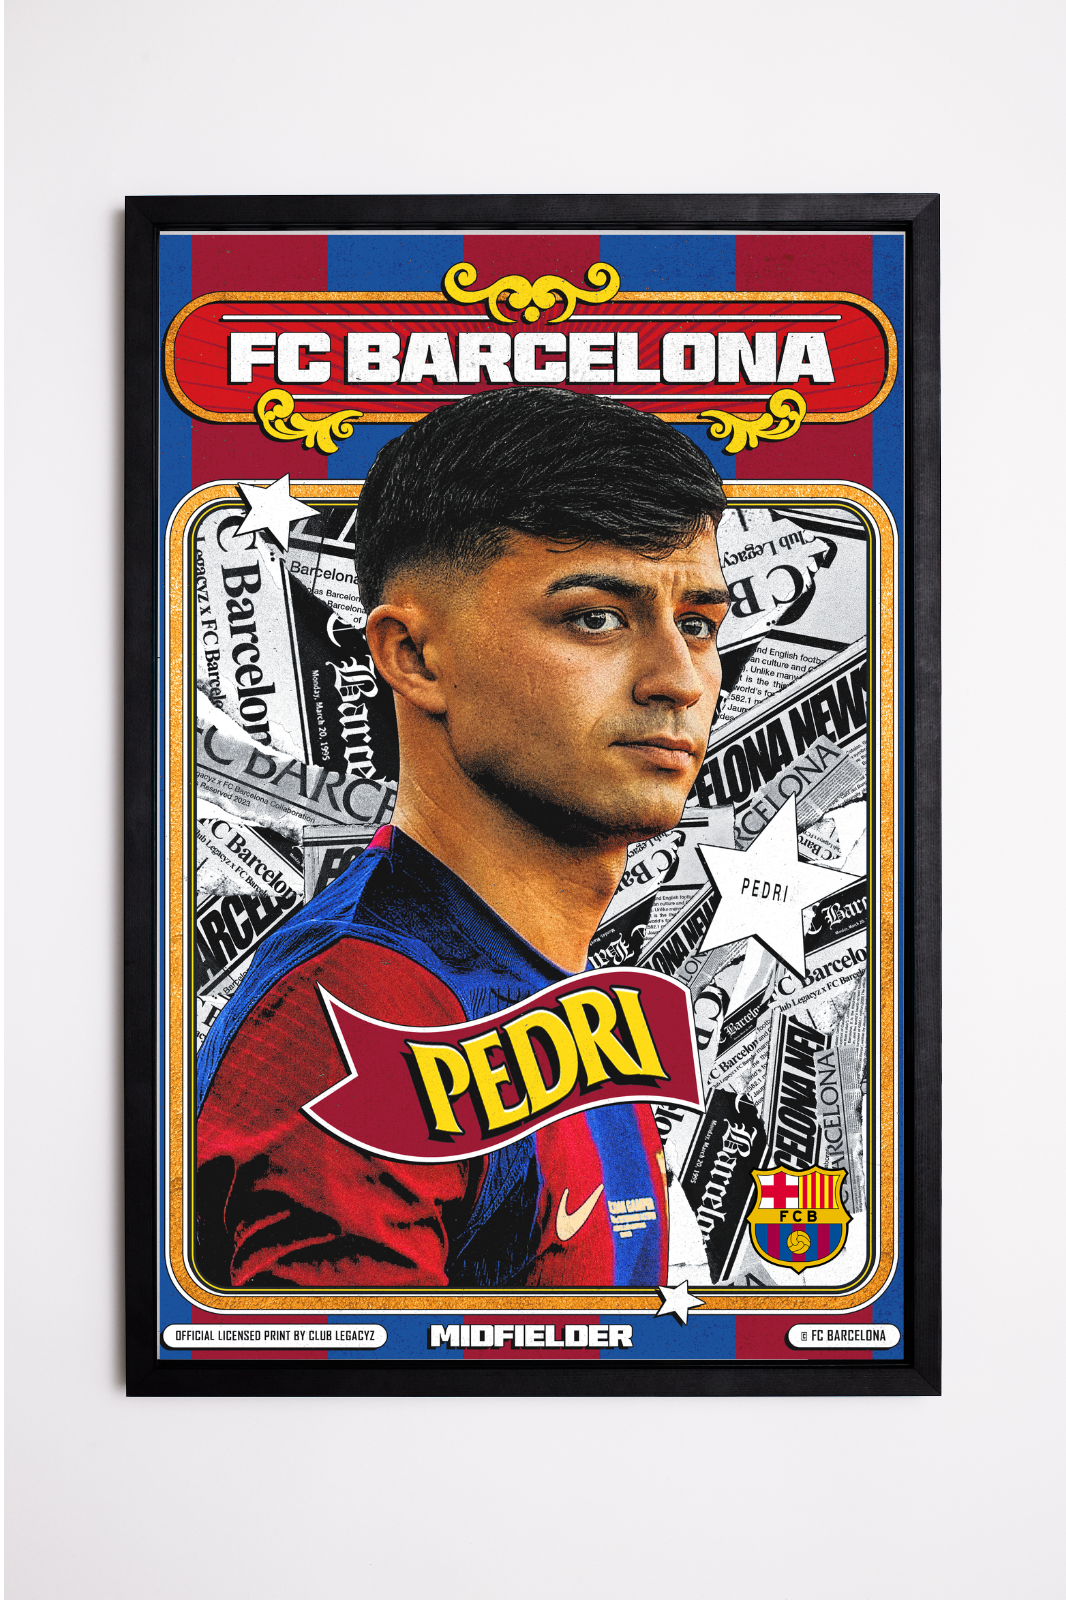 FC Barcelone - Poster Retro Pedri 100 exemplaires